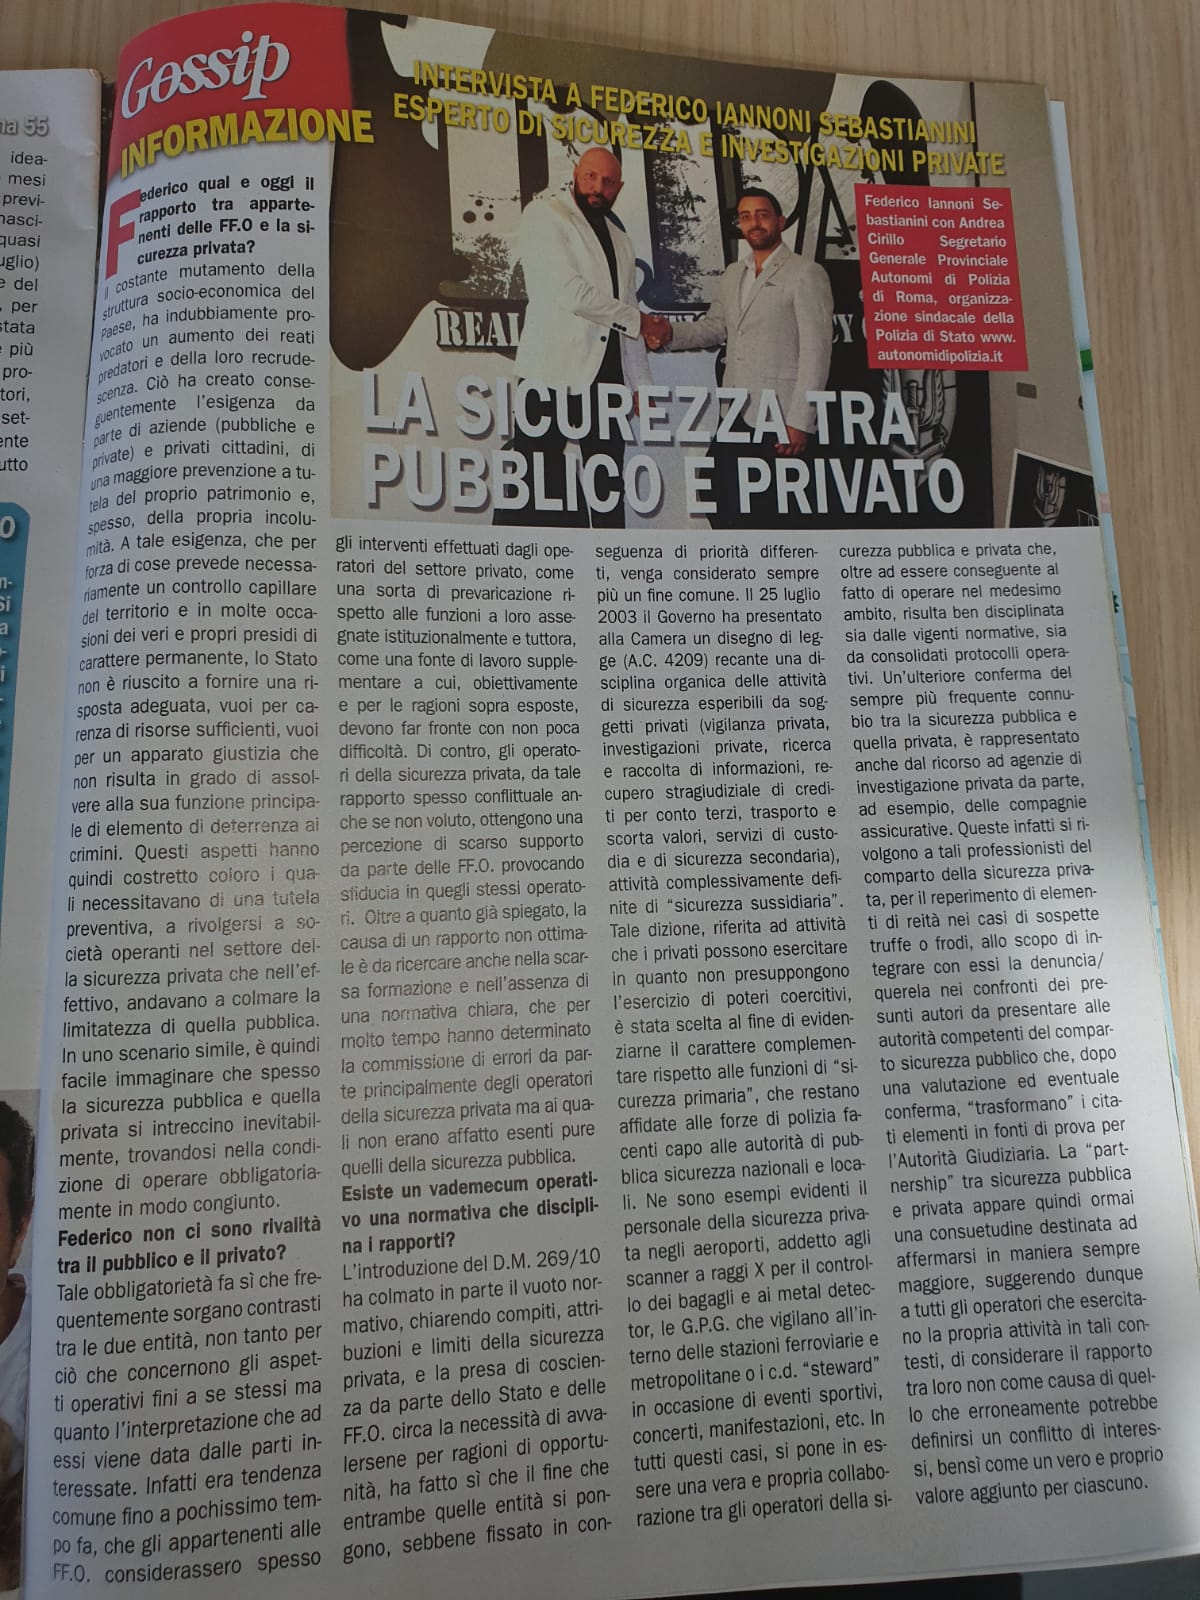 Intervista a #FedericoIannoniSebastianini su tematica rapporto tra sicurezza pubblica e privata (2)